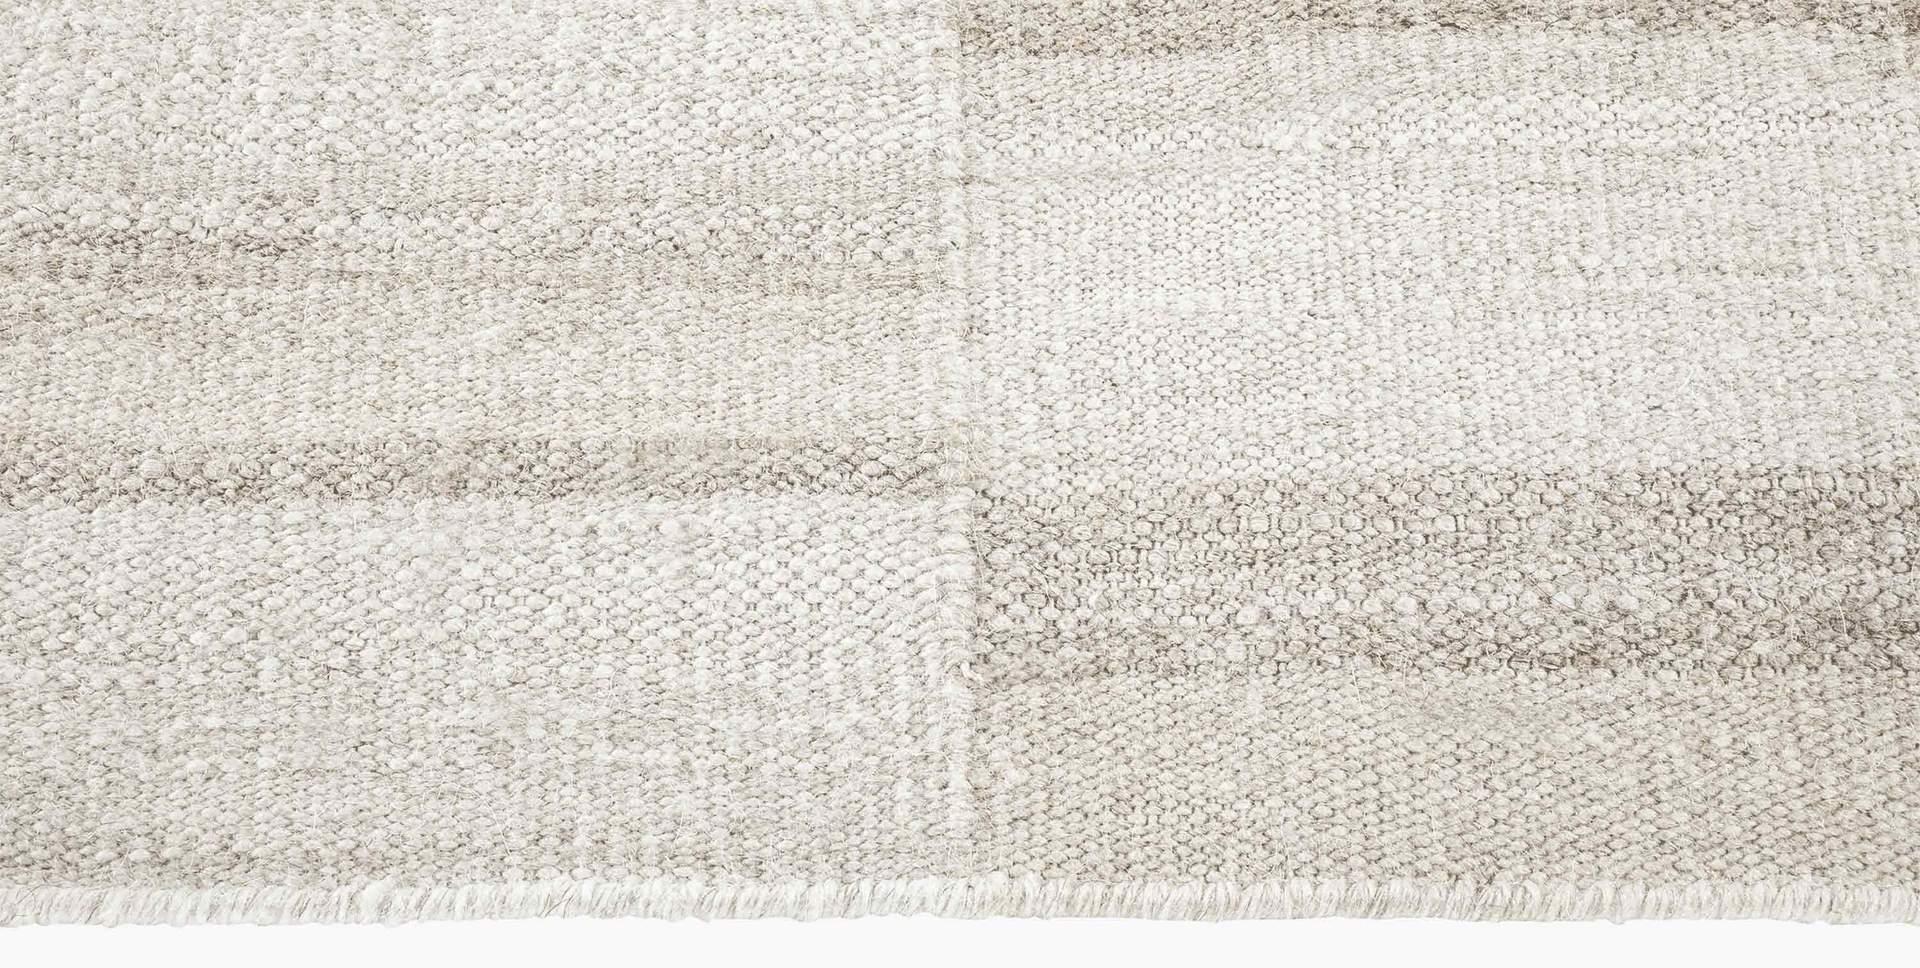 For Sale: Beige (Alterno Sand) Ben Soleimani Alterno Rug– Hand-woven Textured Soft Wool Sand 9'x12' 3